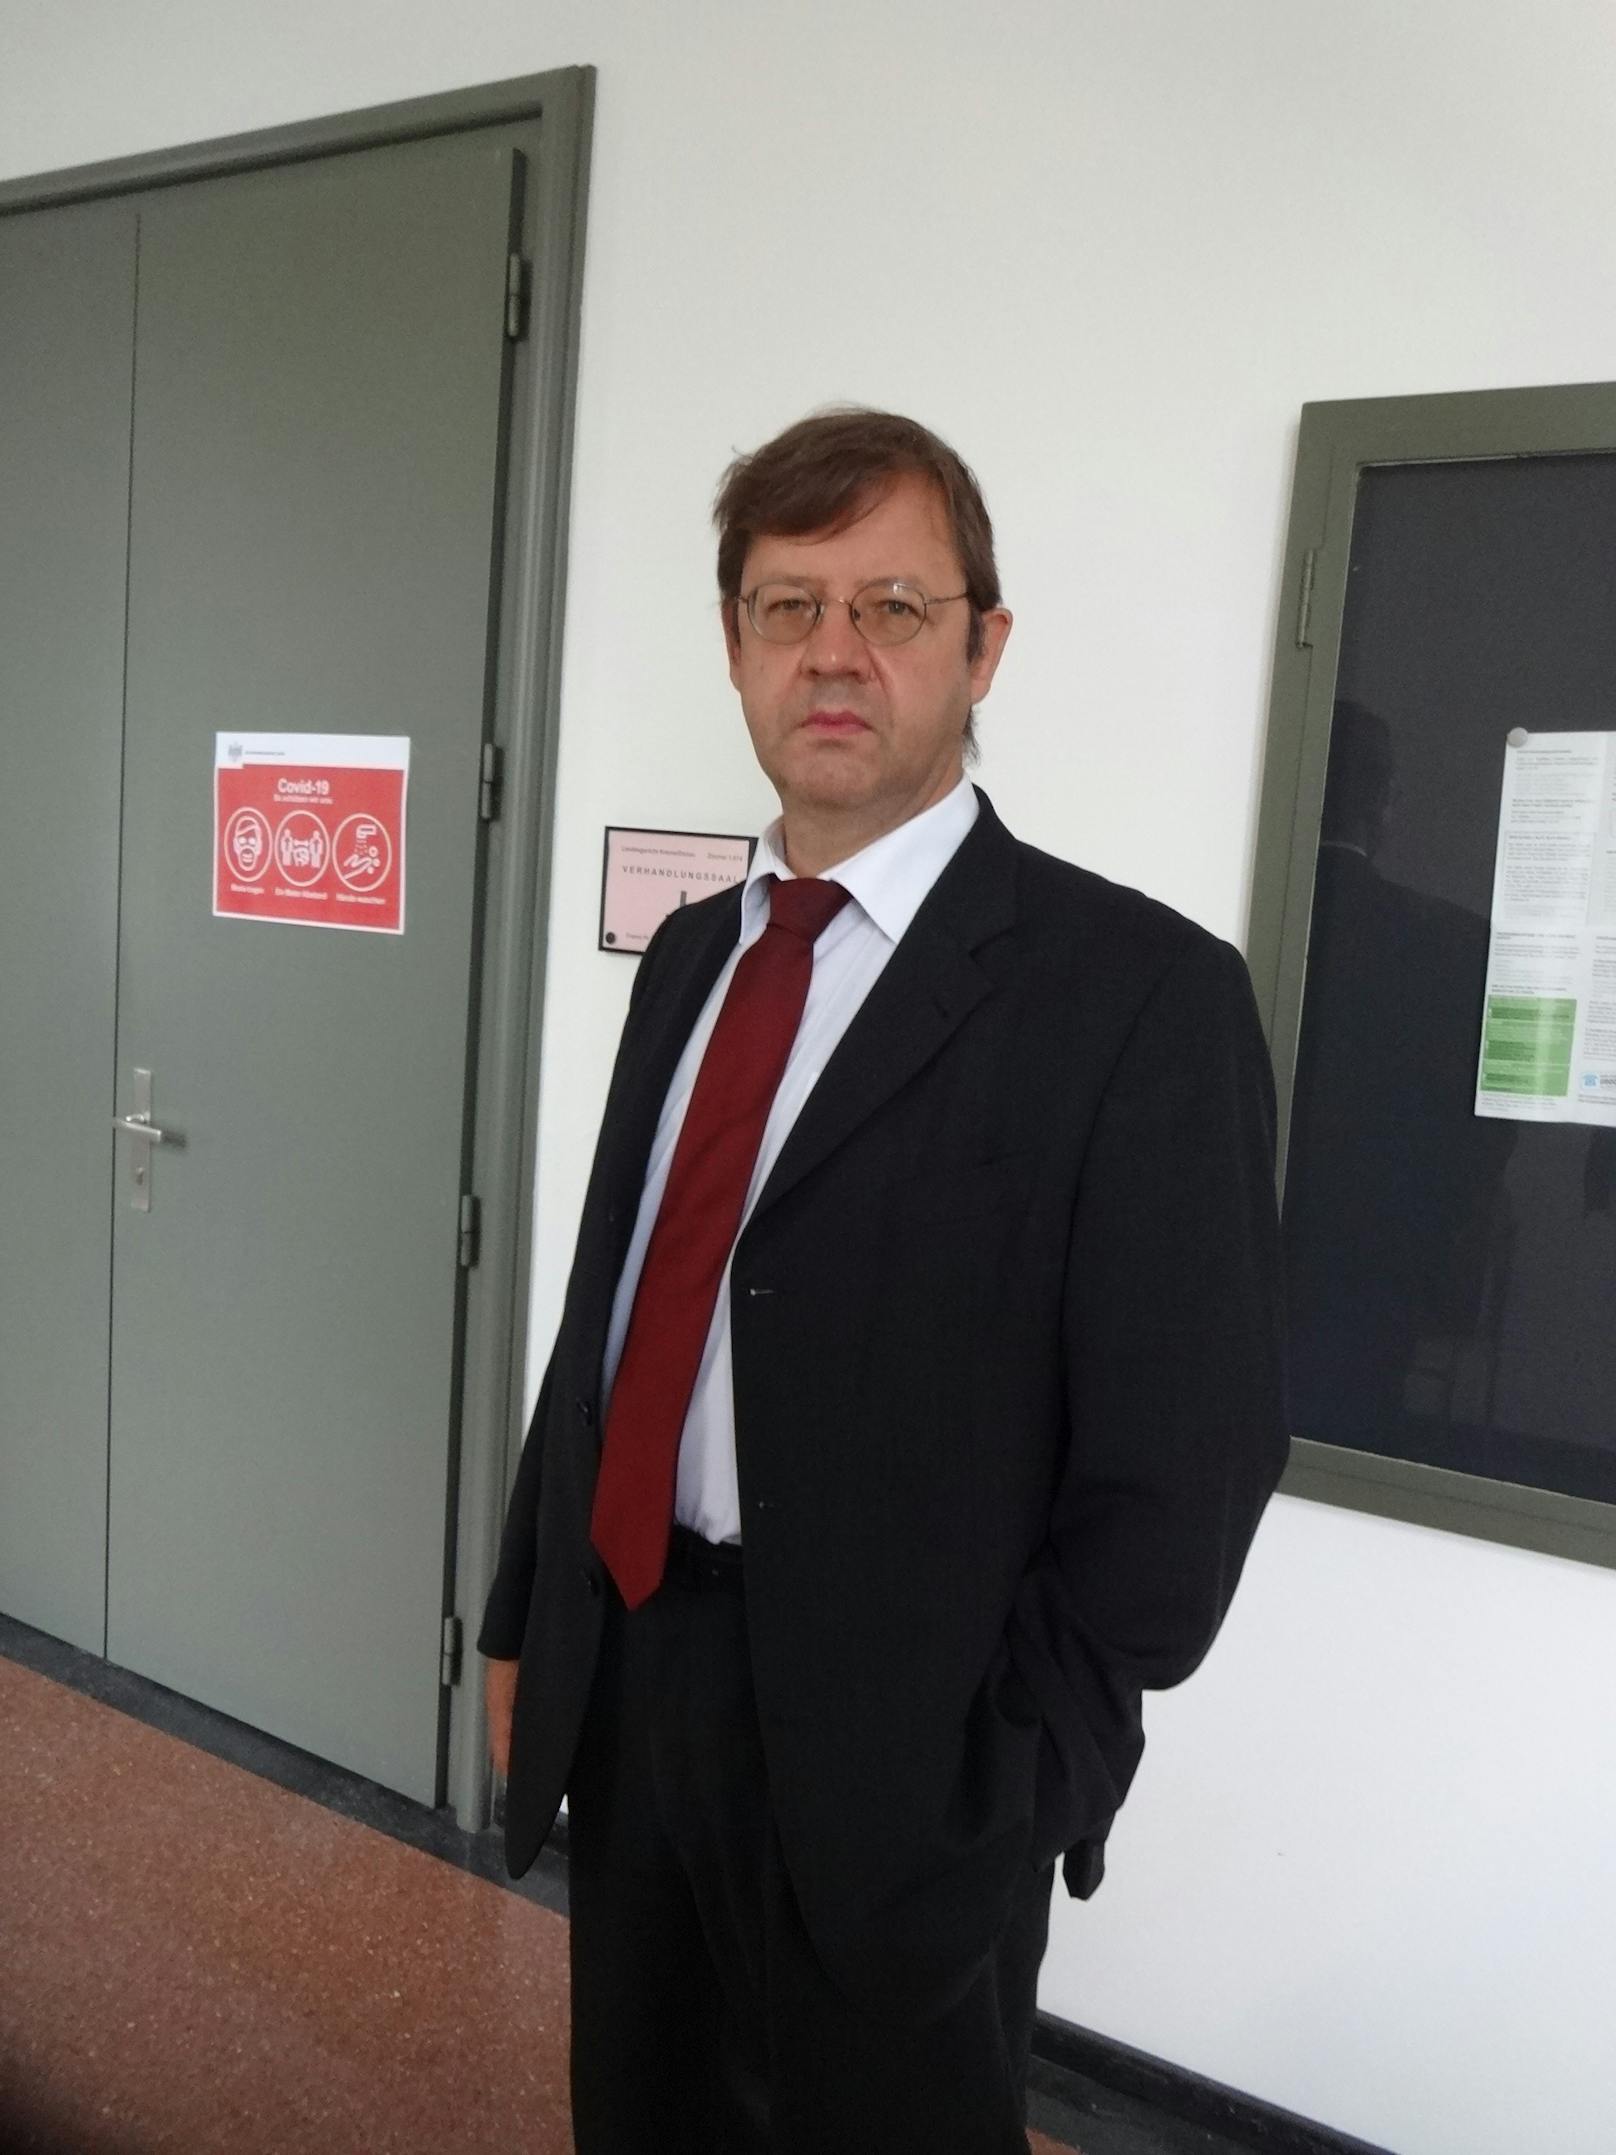 Anwalt Robert Schwarz plädierte für glatten Freispruch